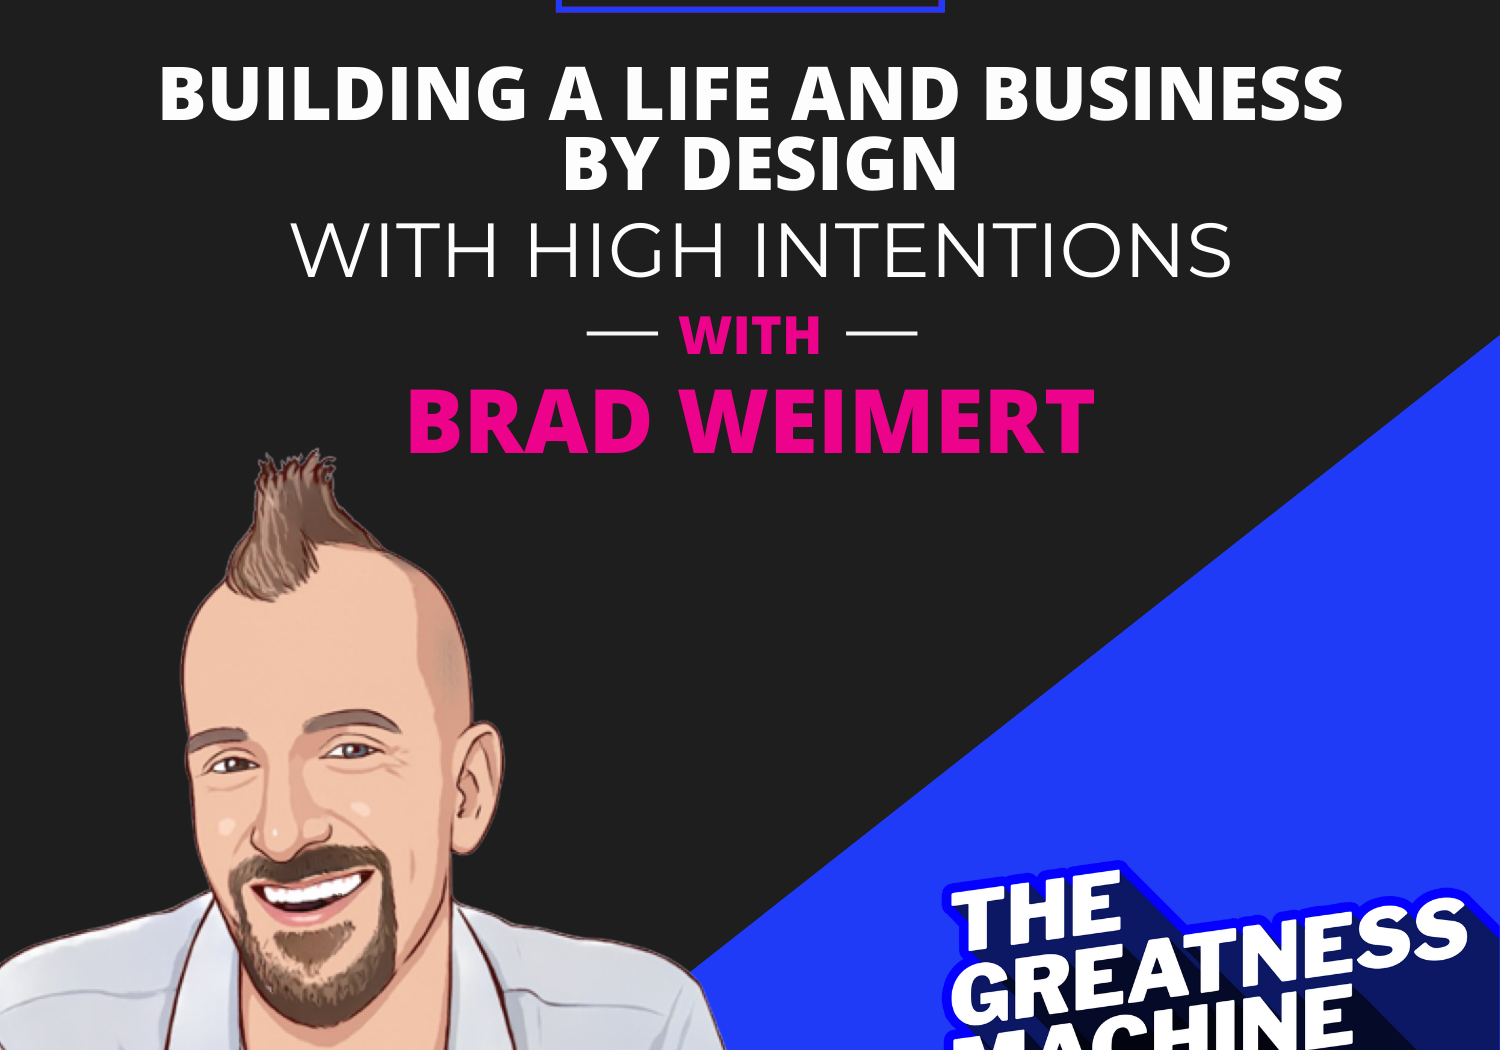 Greatness Machine Thumbnail (Brad Weimert)